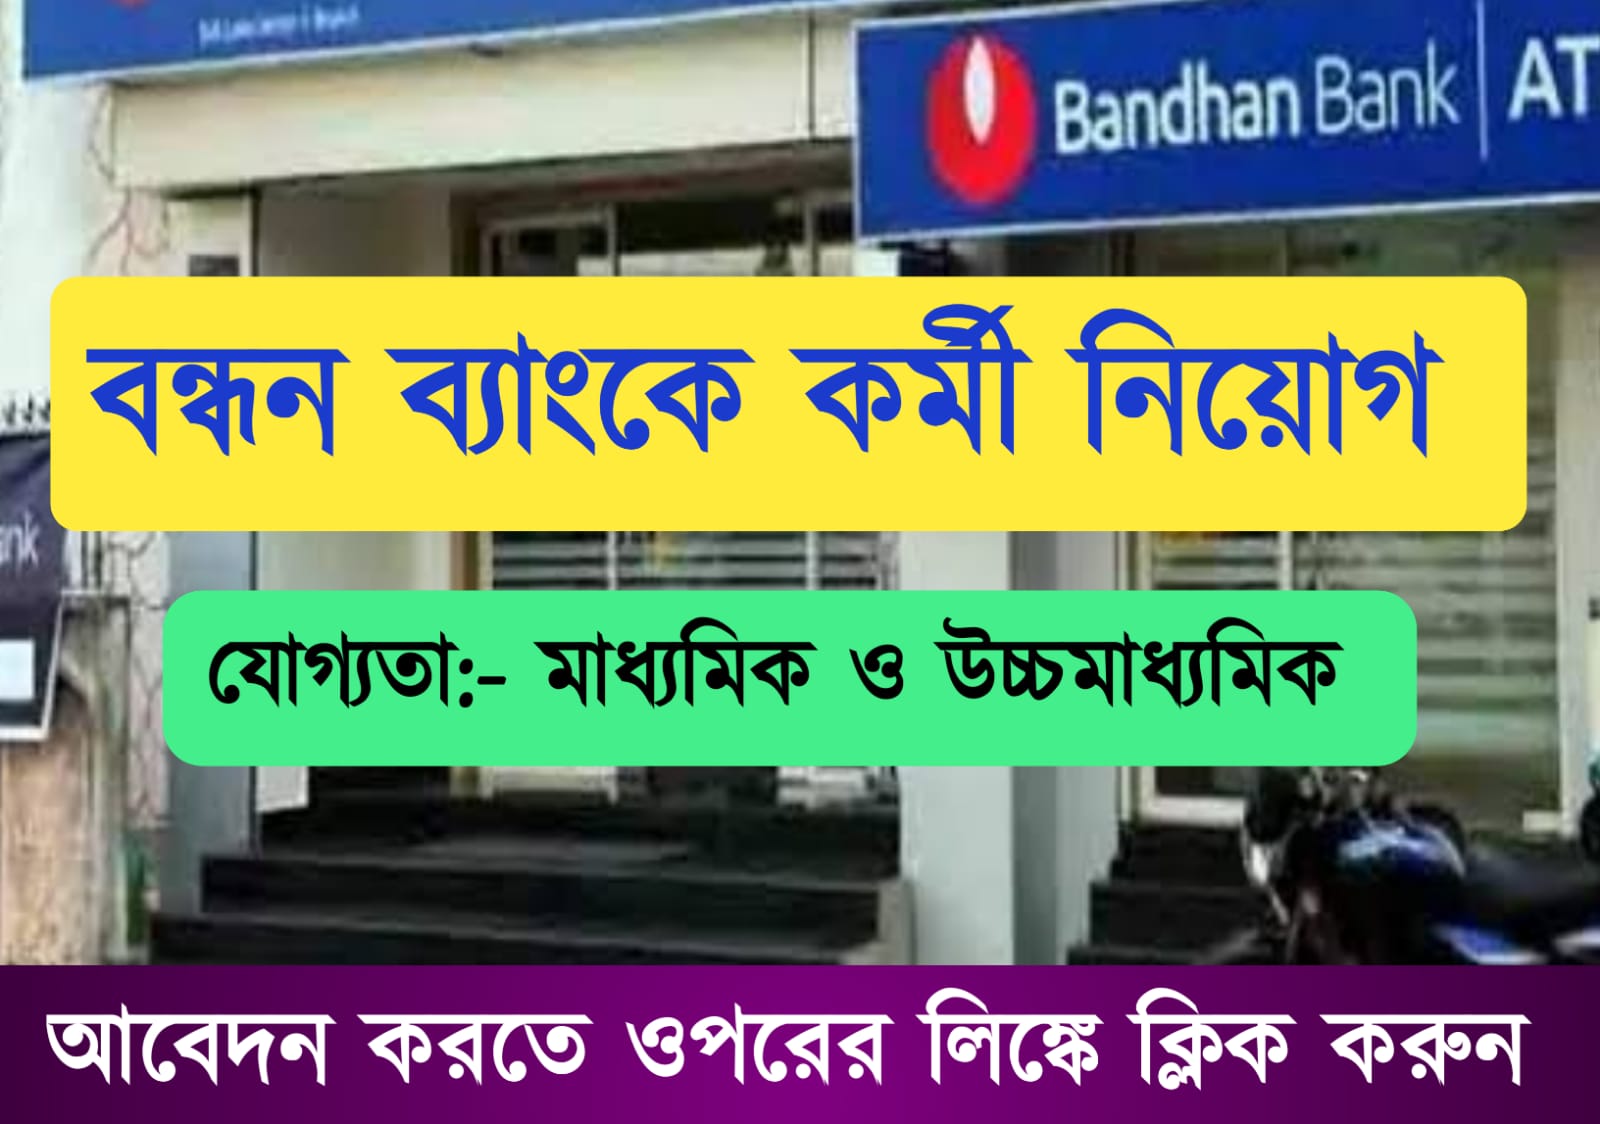 Bandhan Bank Recruitment 2022